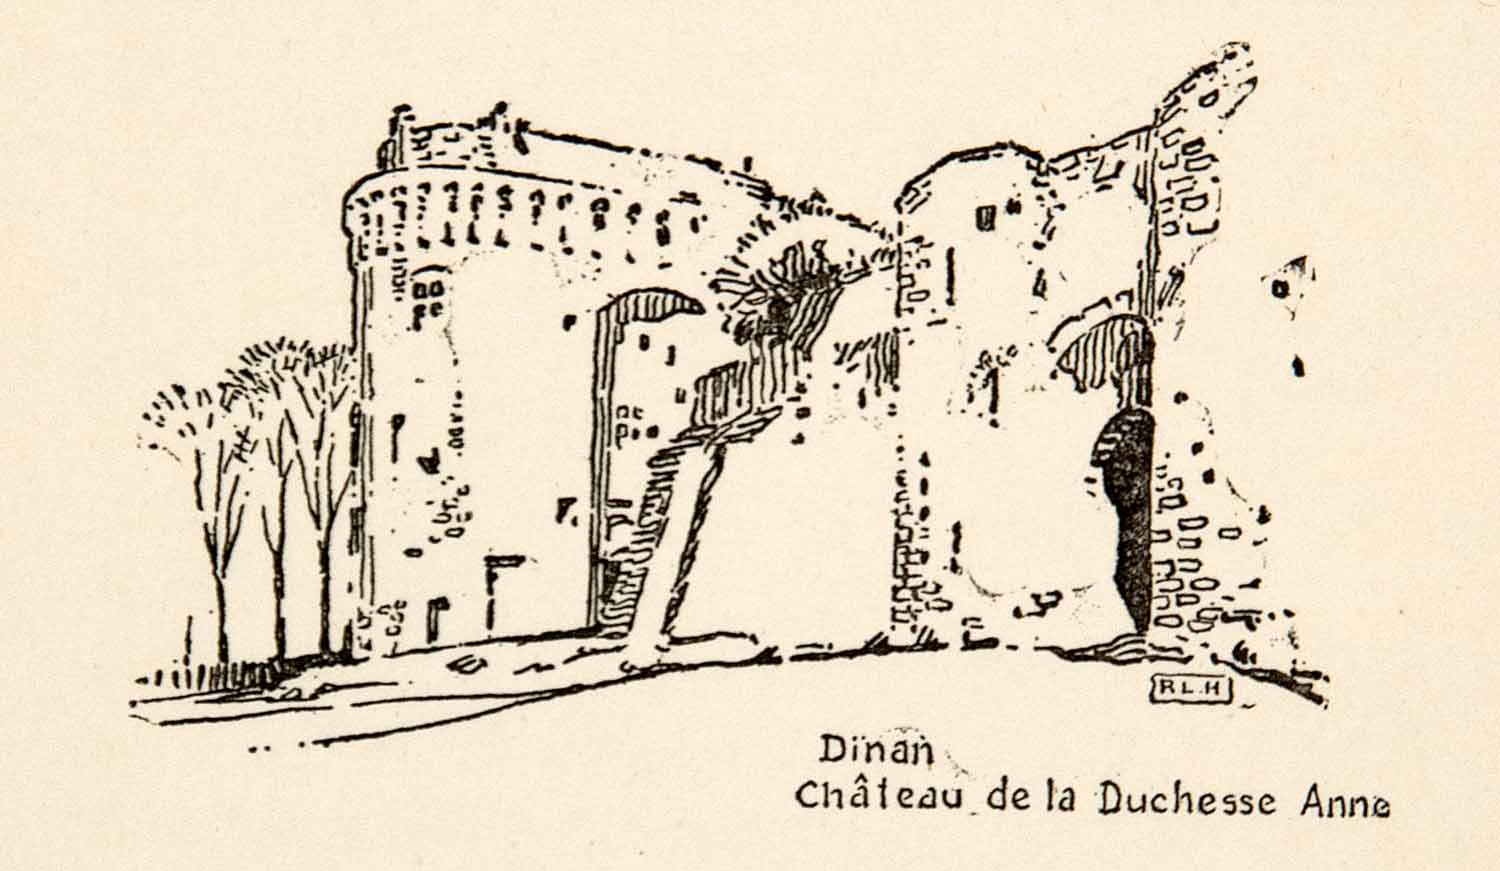 1917 Wood Engraving Dinan Chateau de la Duchesse Anne France Roy L. Hilton XGHB6